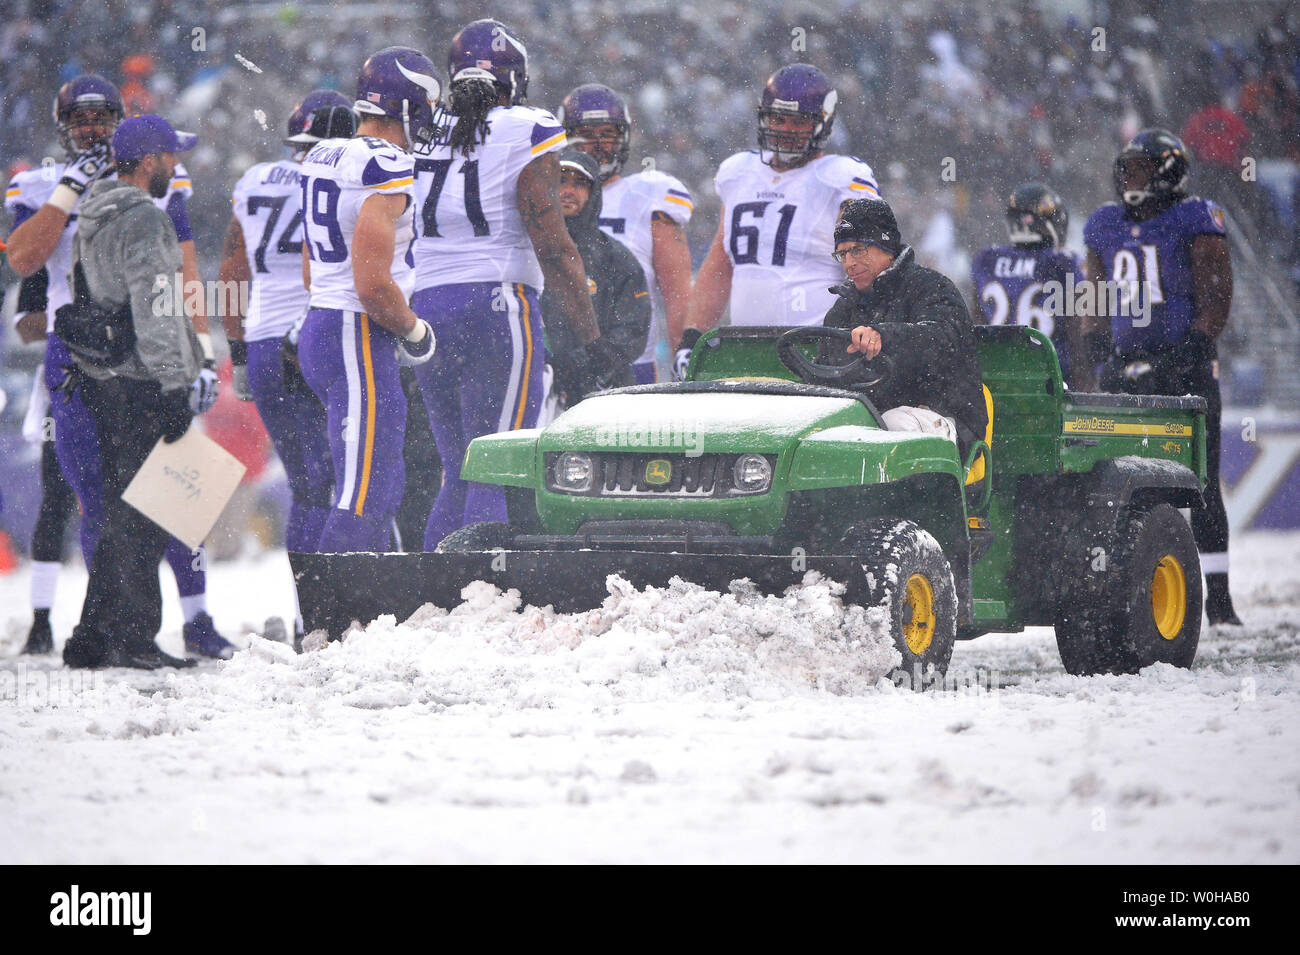 Ein Arbeitnehmer mit einem Schnee auf dem Feld pflügen wie die Baltimore Ravens die Minnesota Vikings in schweren Schnee bei M&T Bank Stadium in Baltimore, Maryland, 8. Dezember 2013 spielen. UPI/Kevin Dietsch Stockfoto